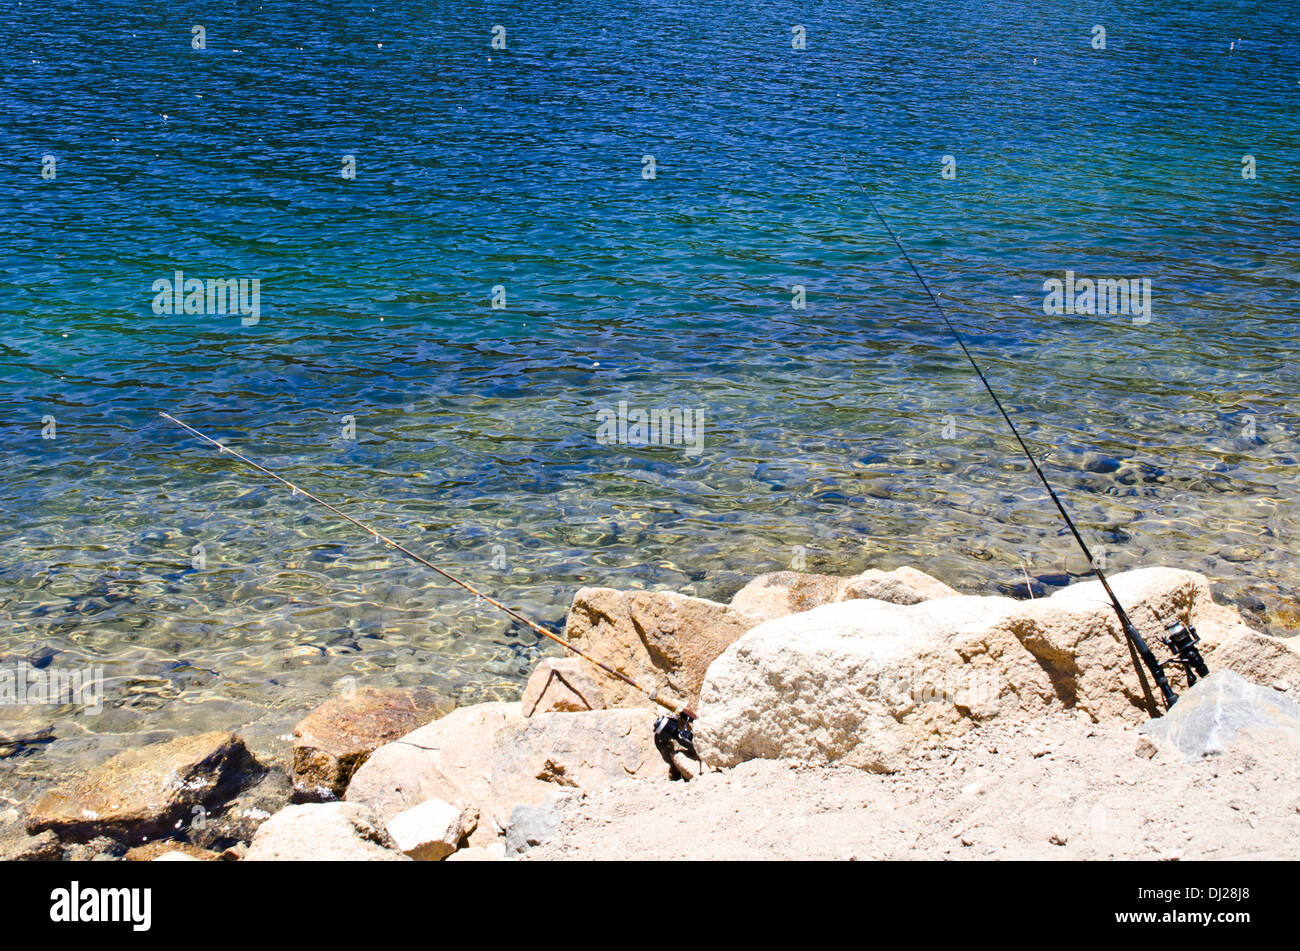 Fishing spot at the lake Stock Photo